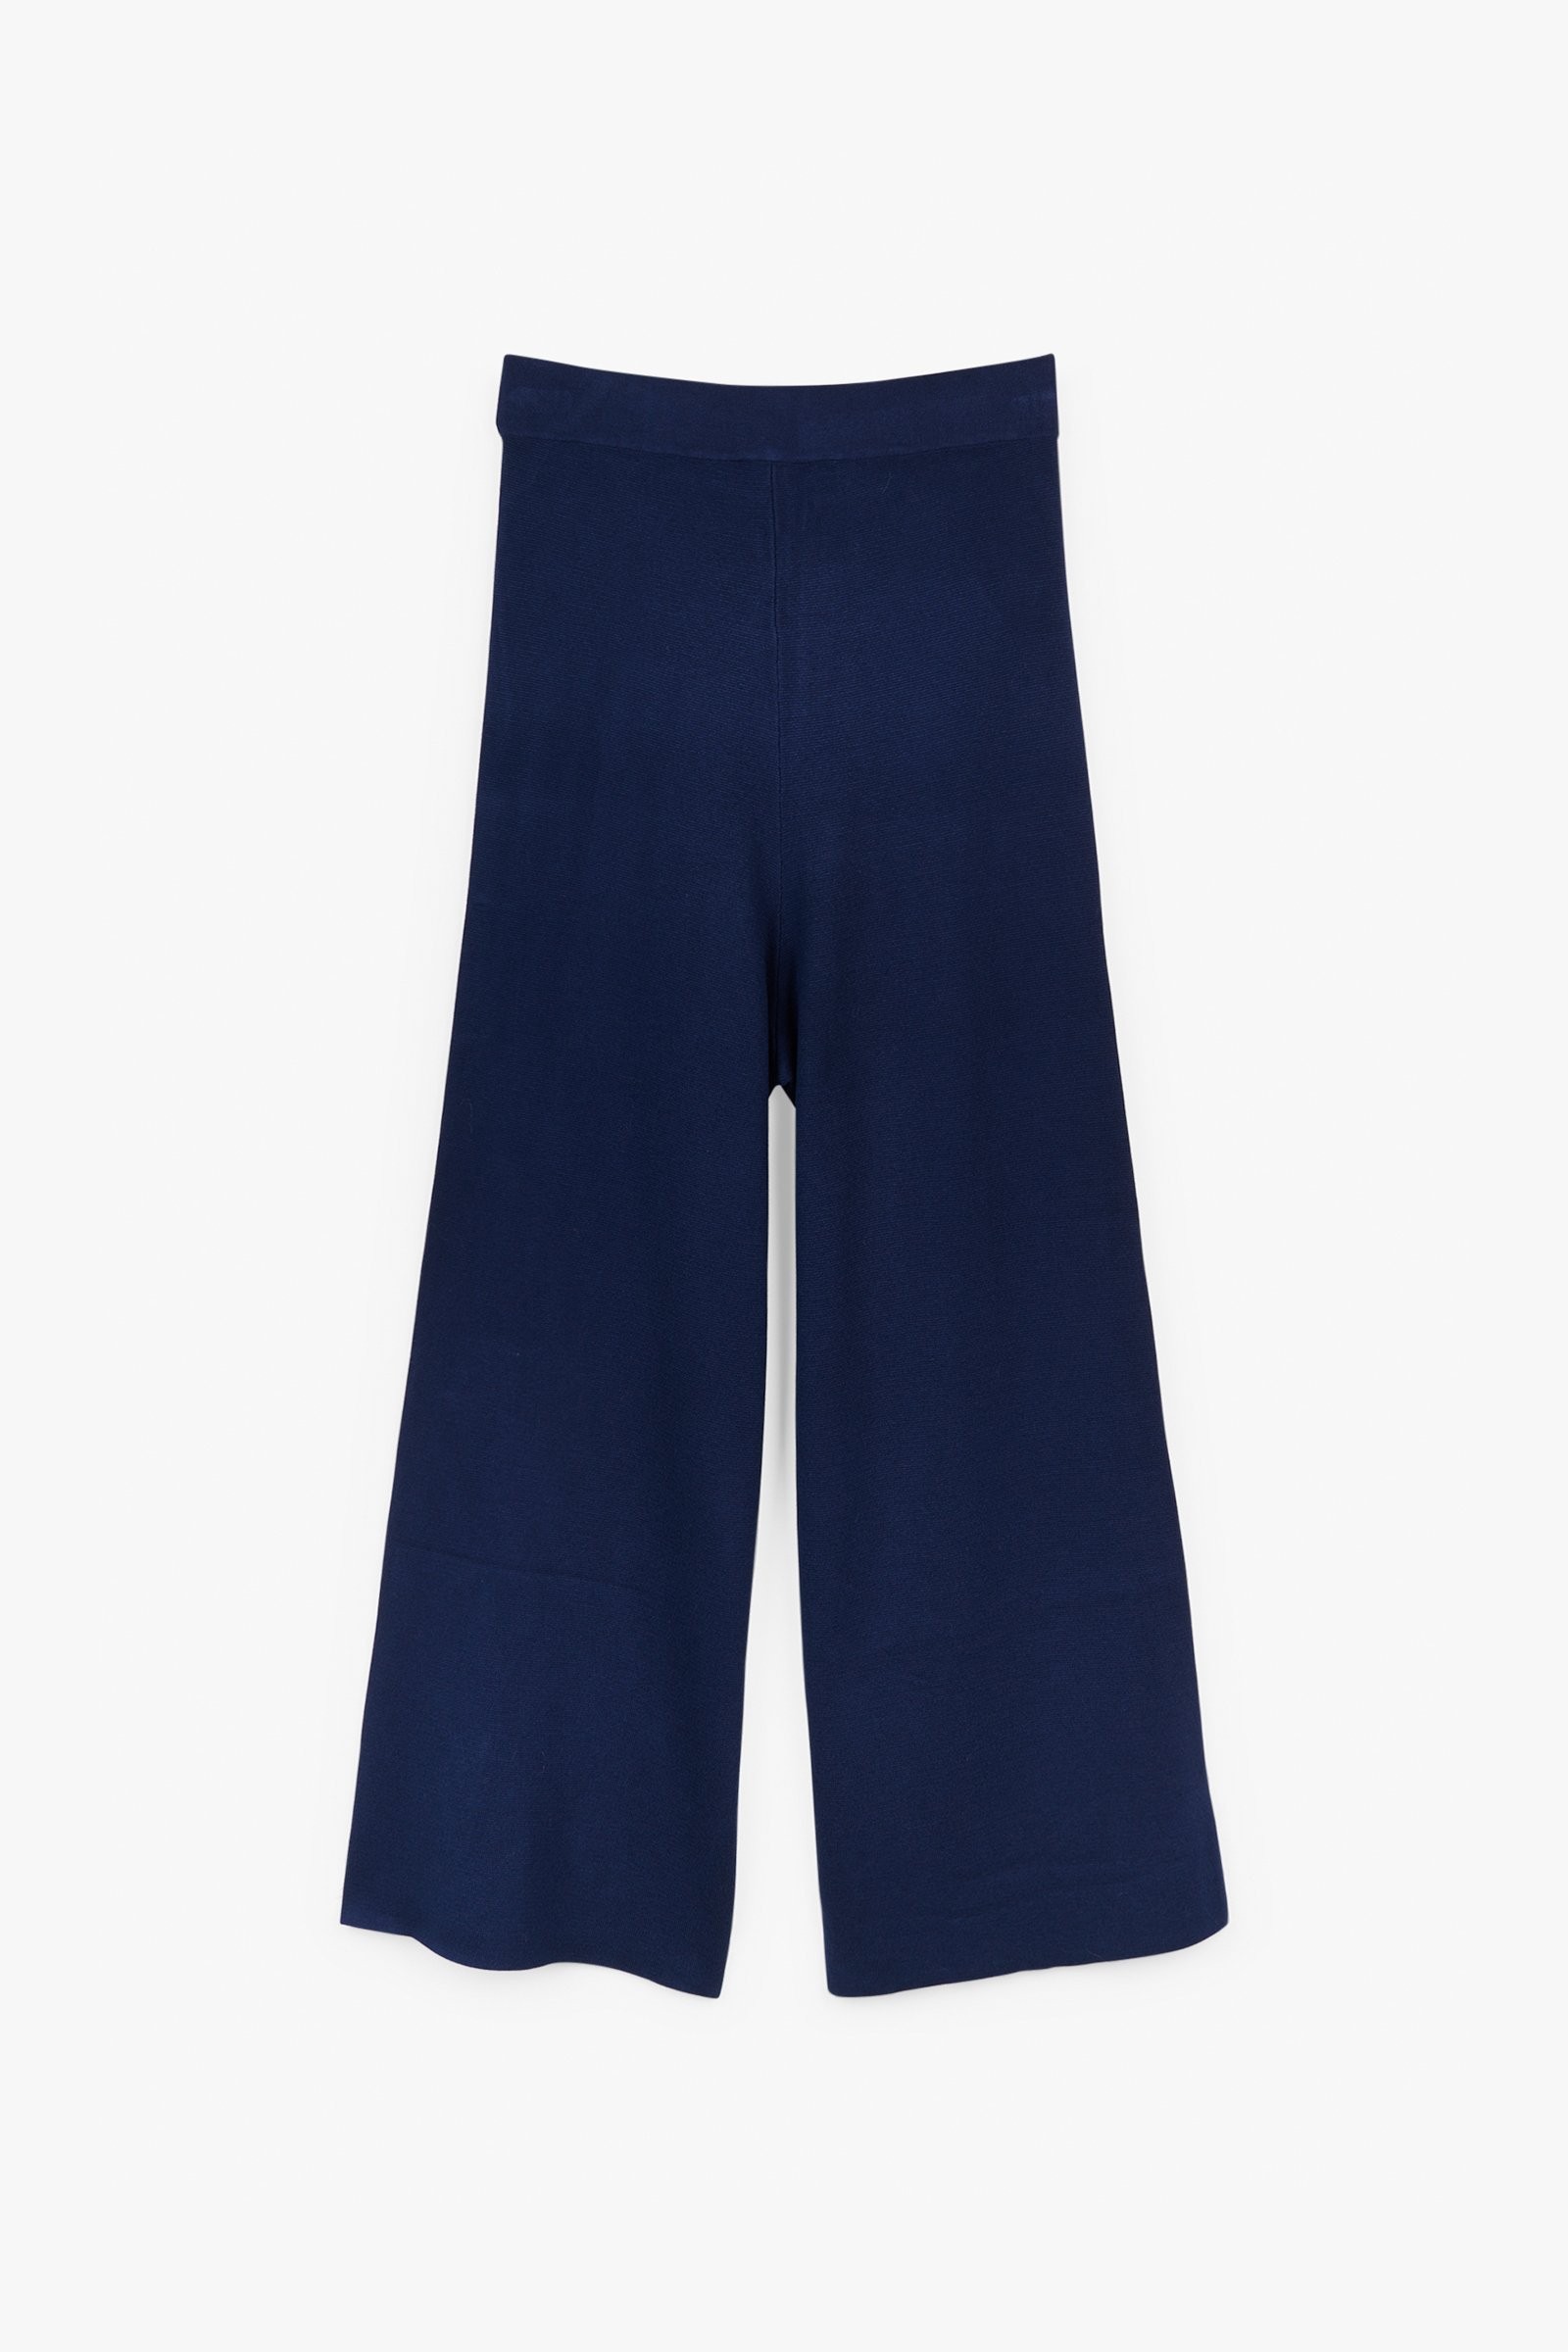 CKS Dames - PILARMA - pantalon à la cheville - bleu foncé